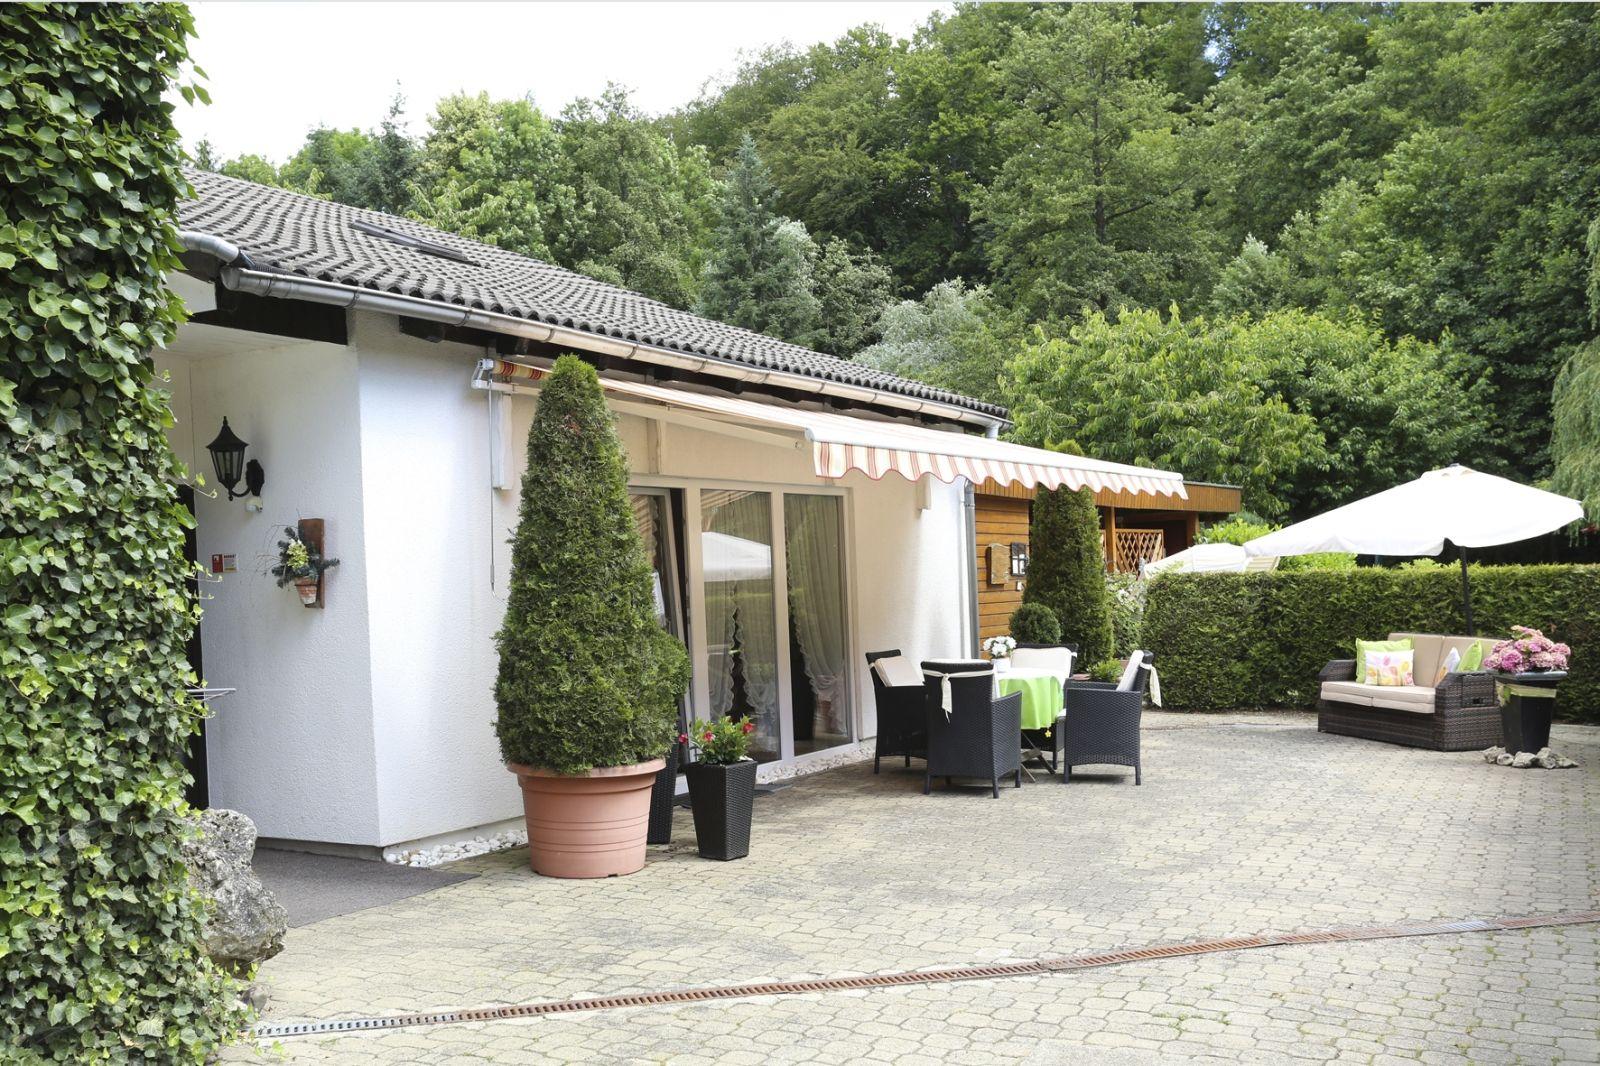 Ferienhaus in Walkenried mit Schöner Terrasse Ferienhaus in Deutschland